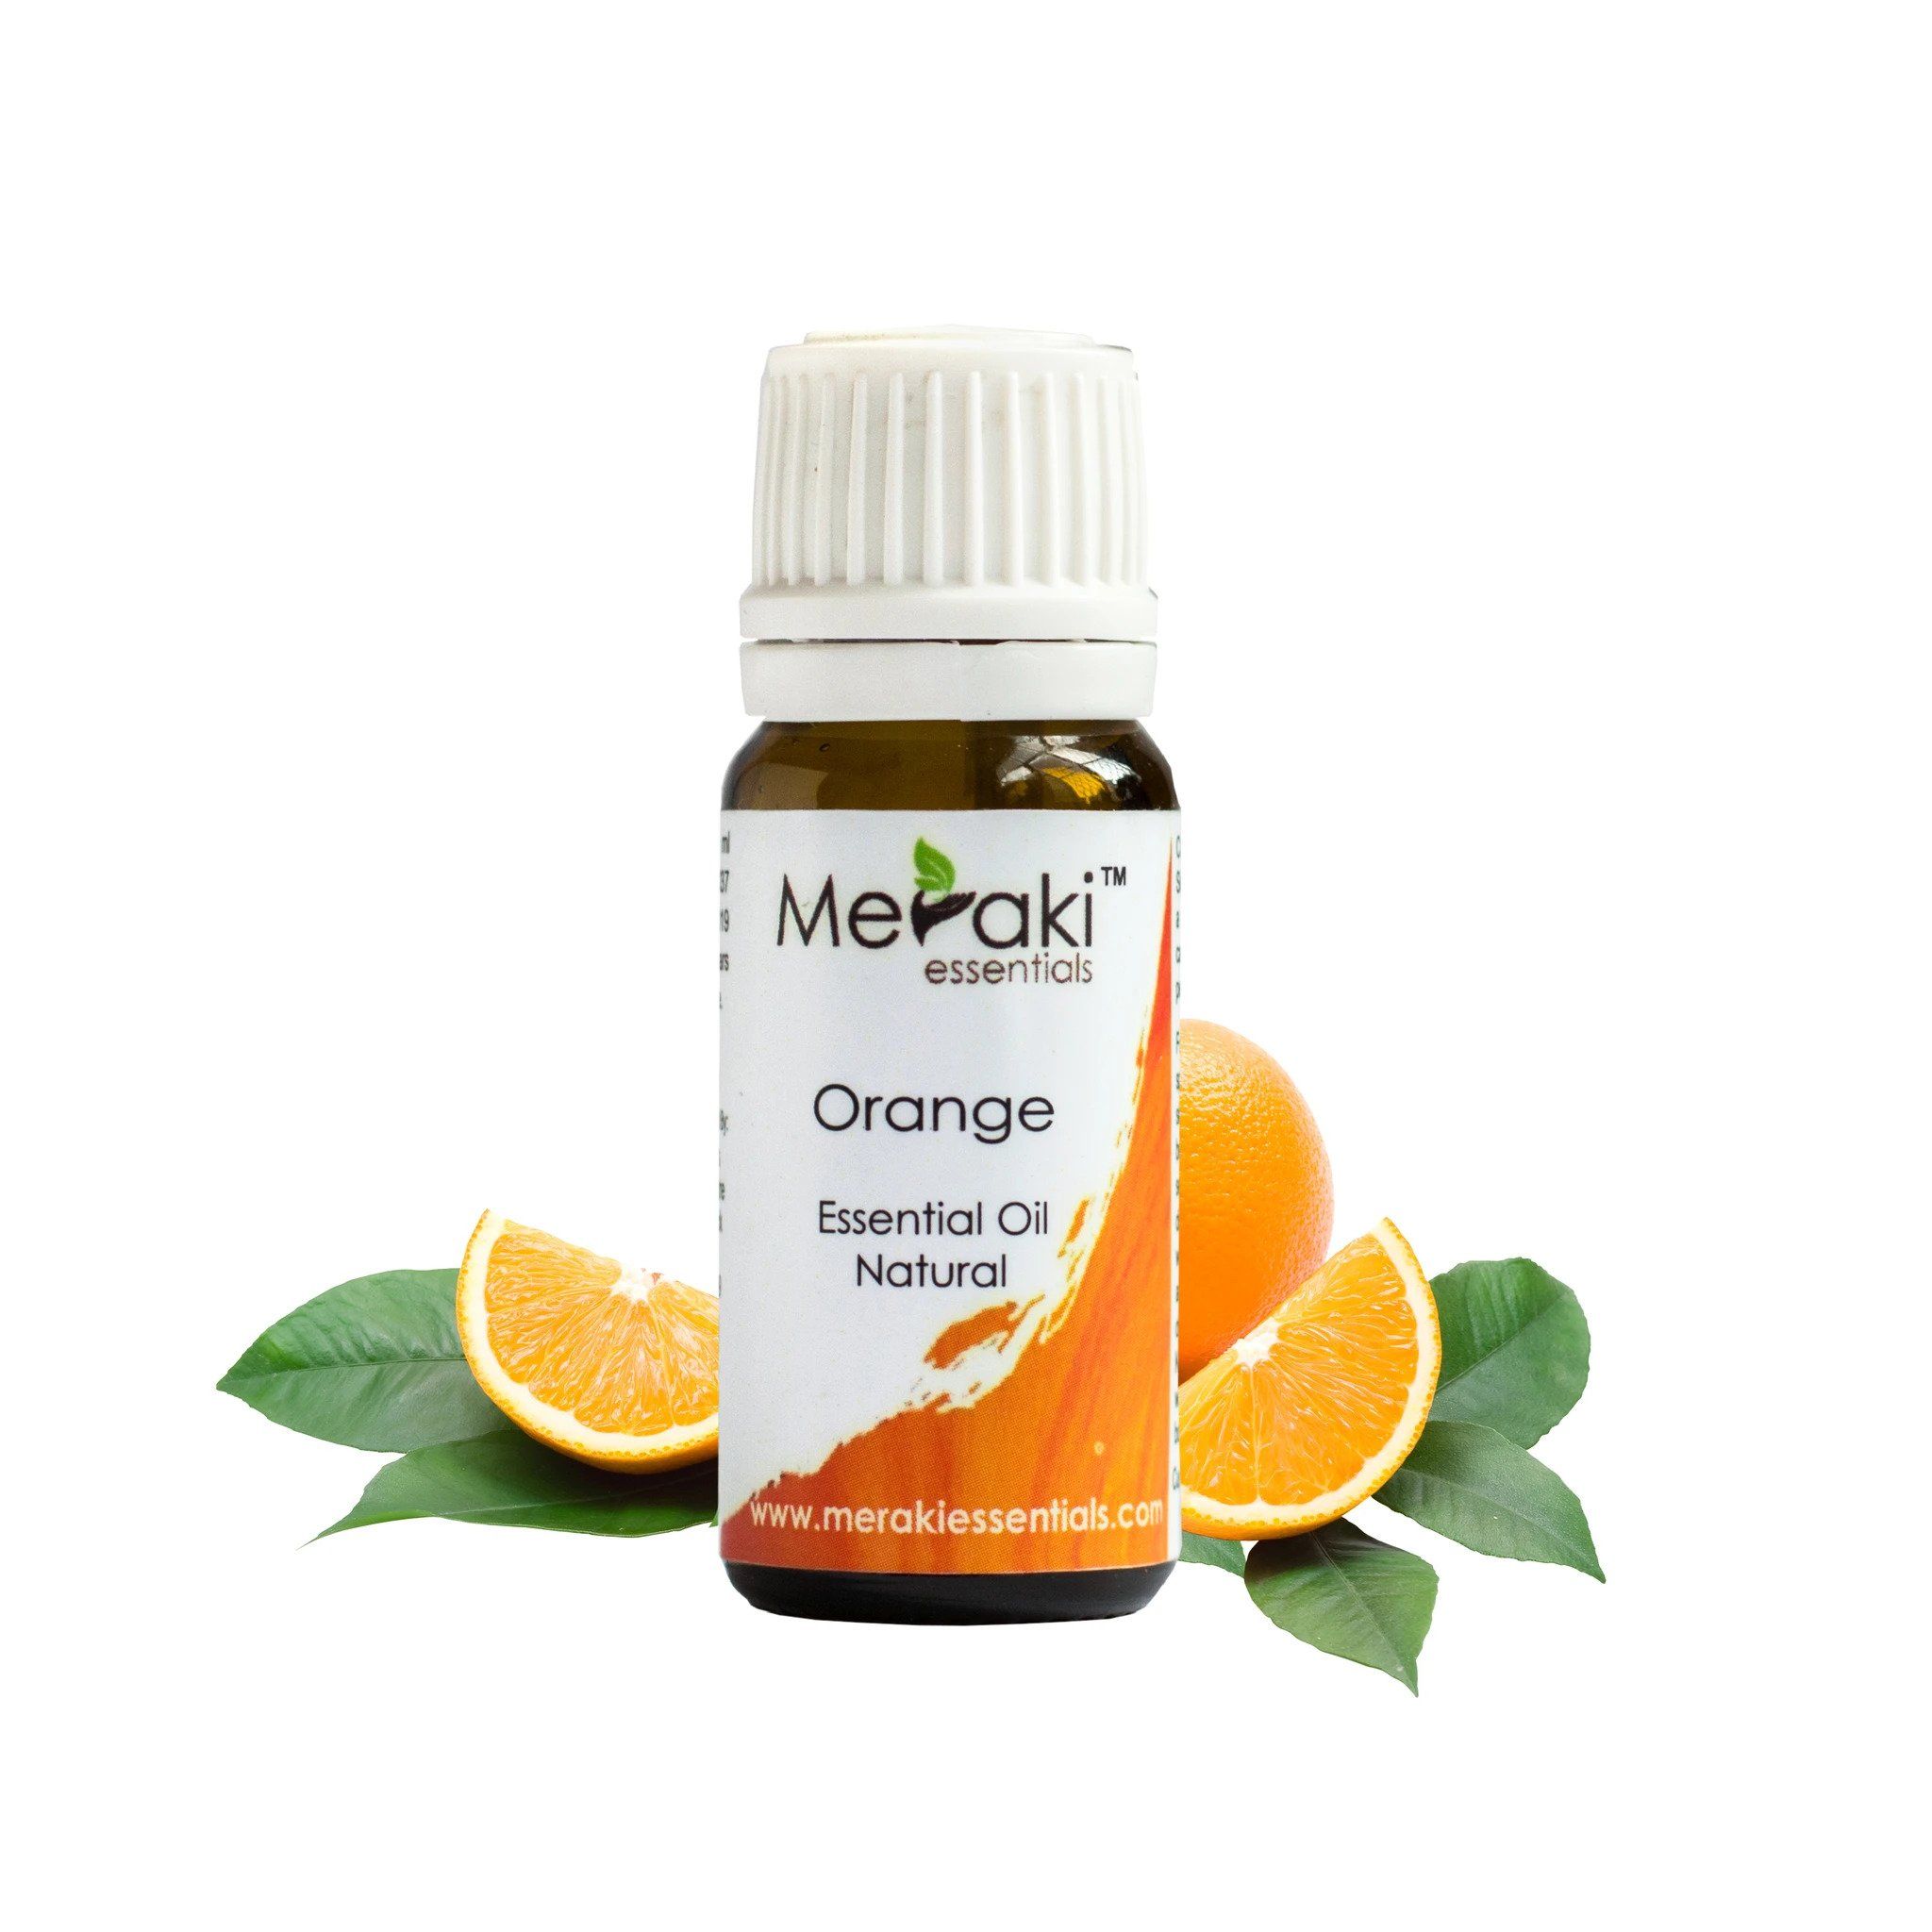  Pure Orange Essential Oil for Skin